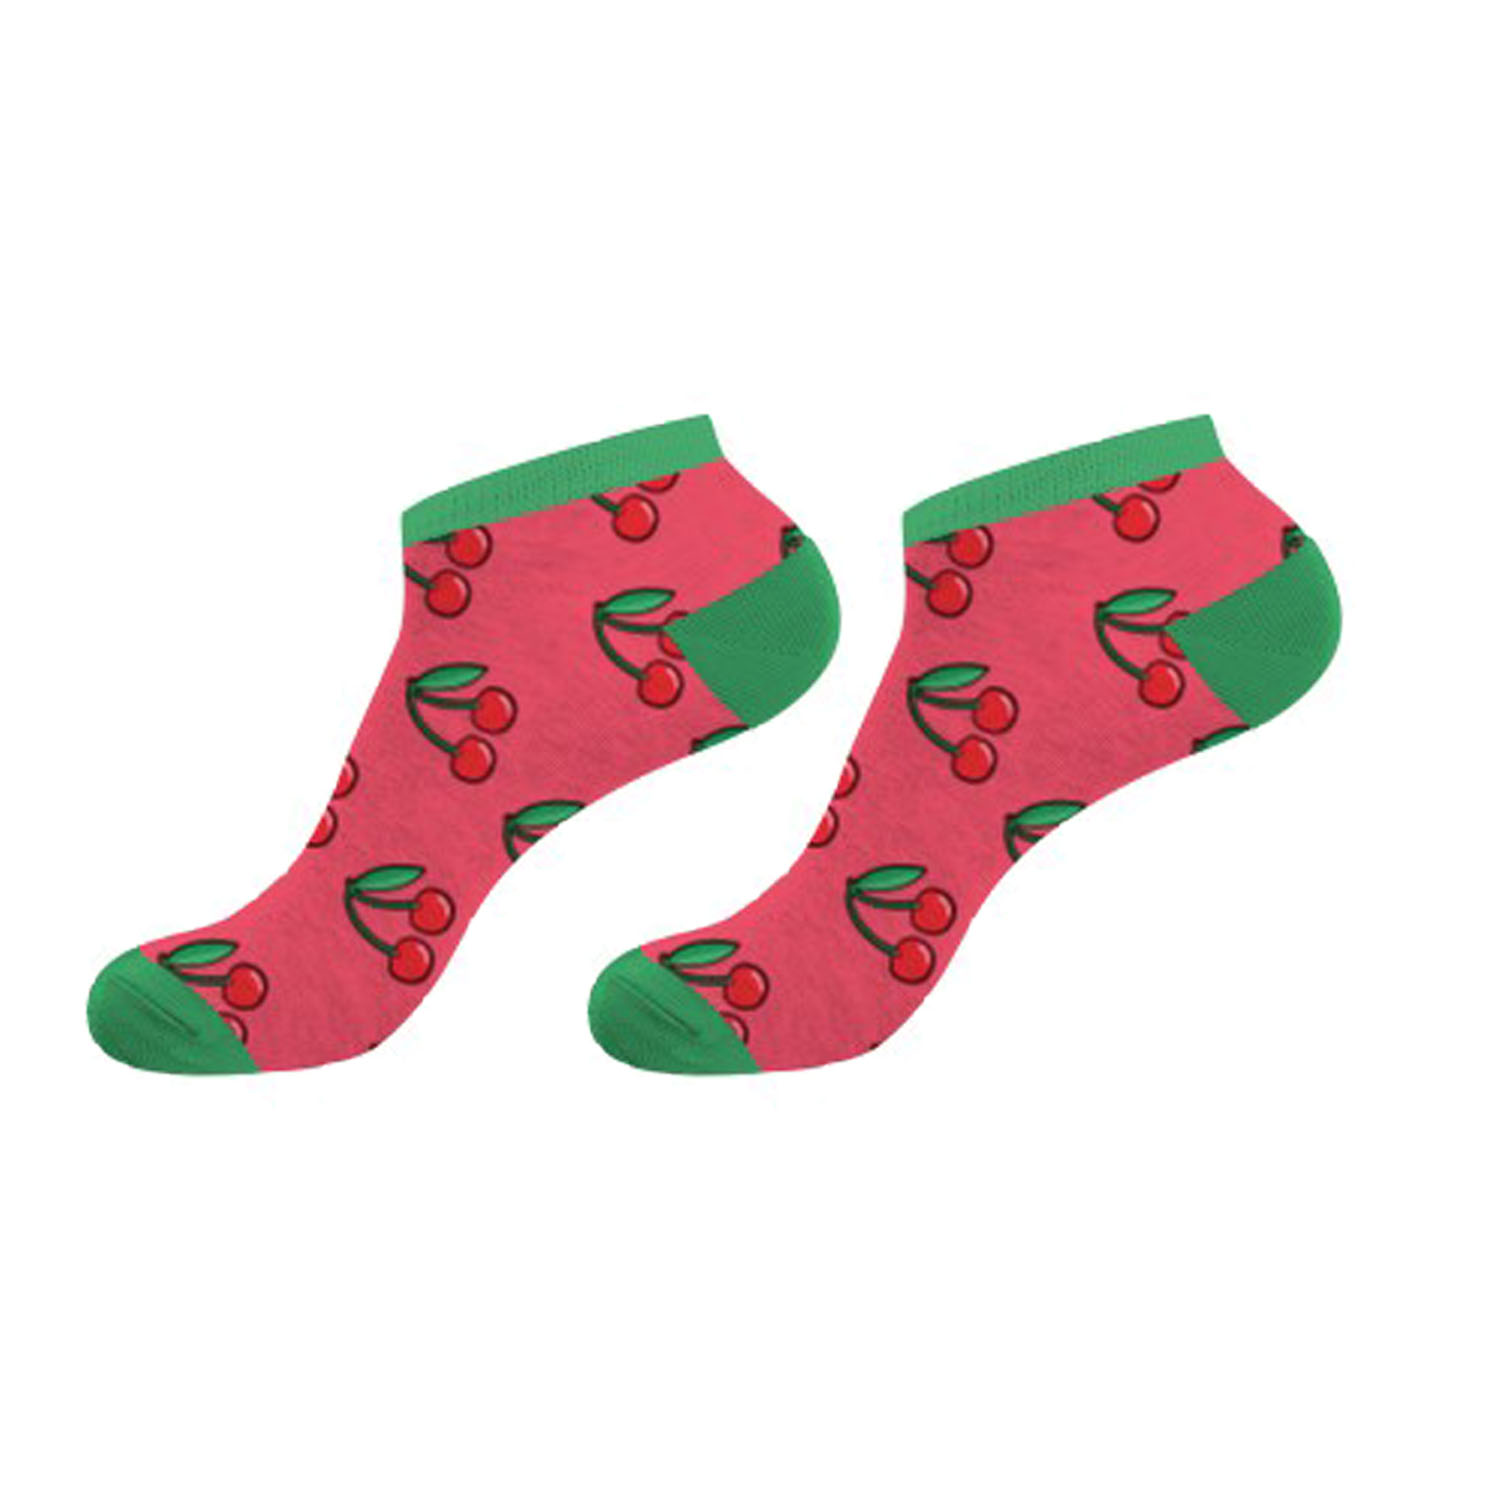 Par De Calcetines Crazy Socks Para Mujer Cherry2 - multicolor - 